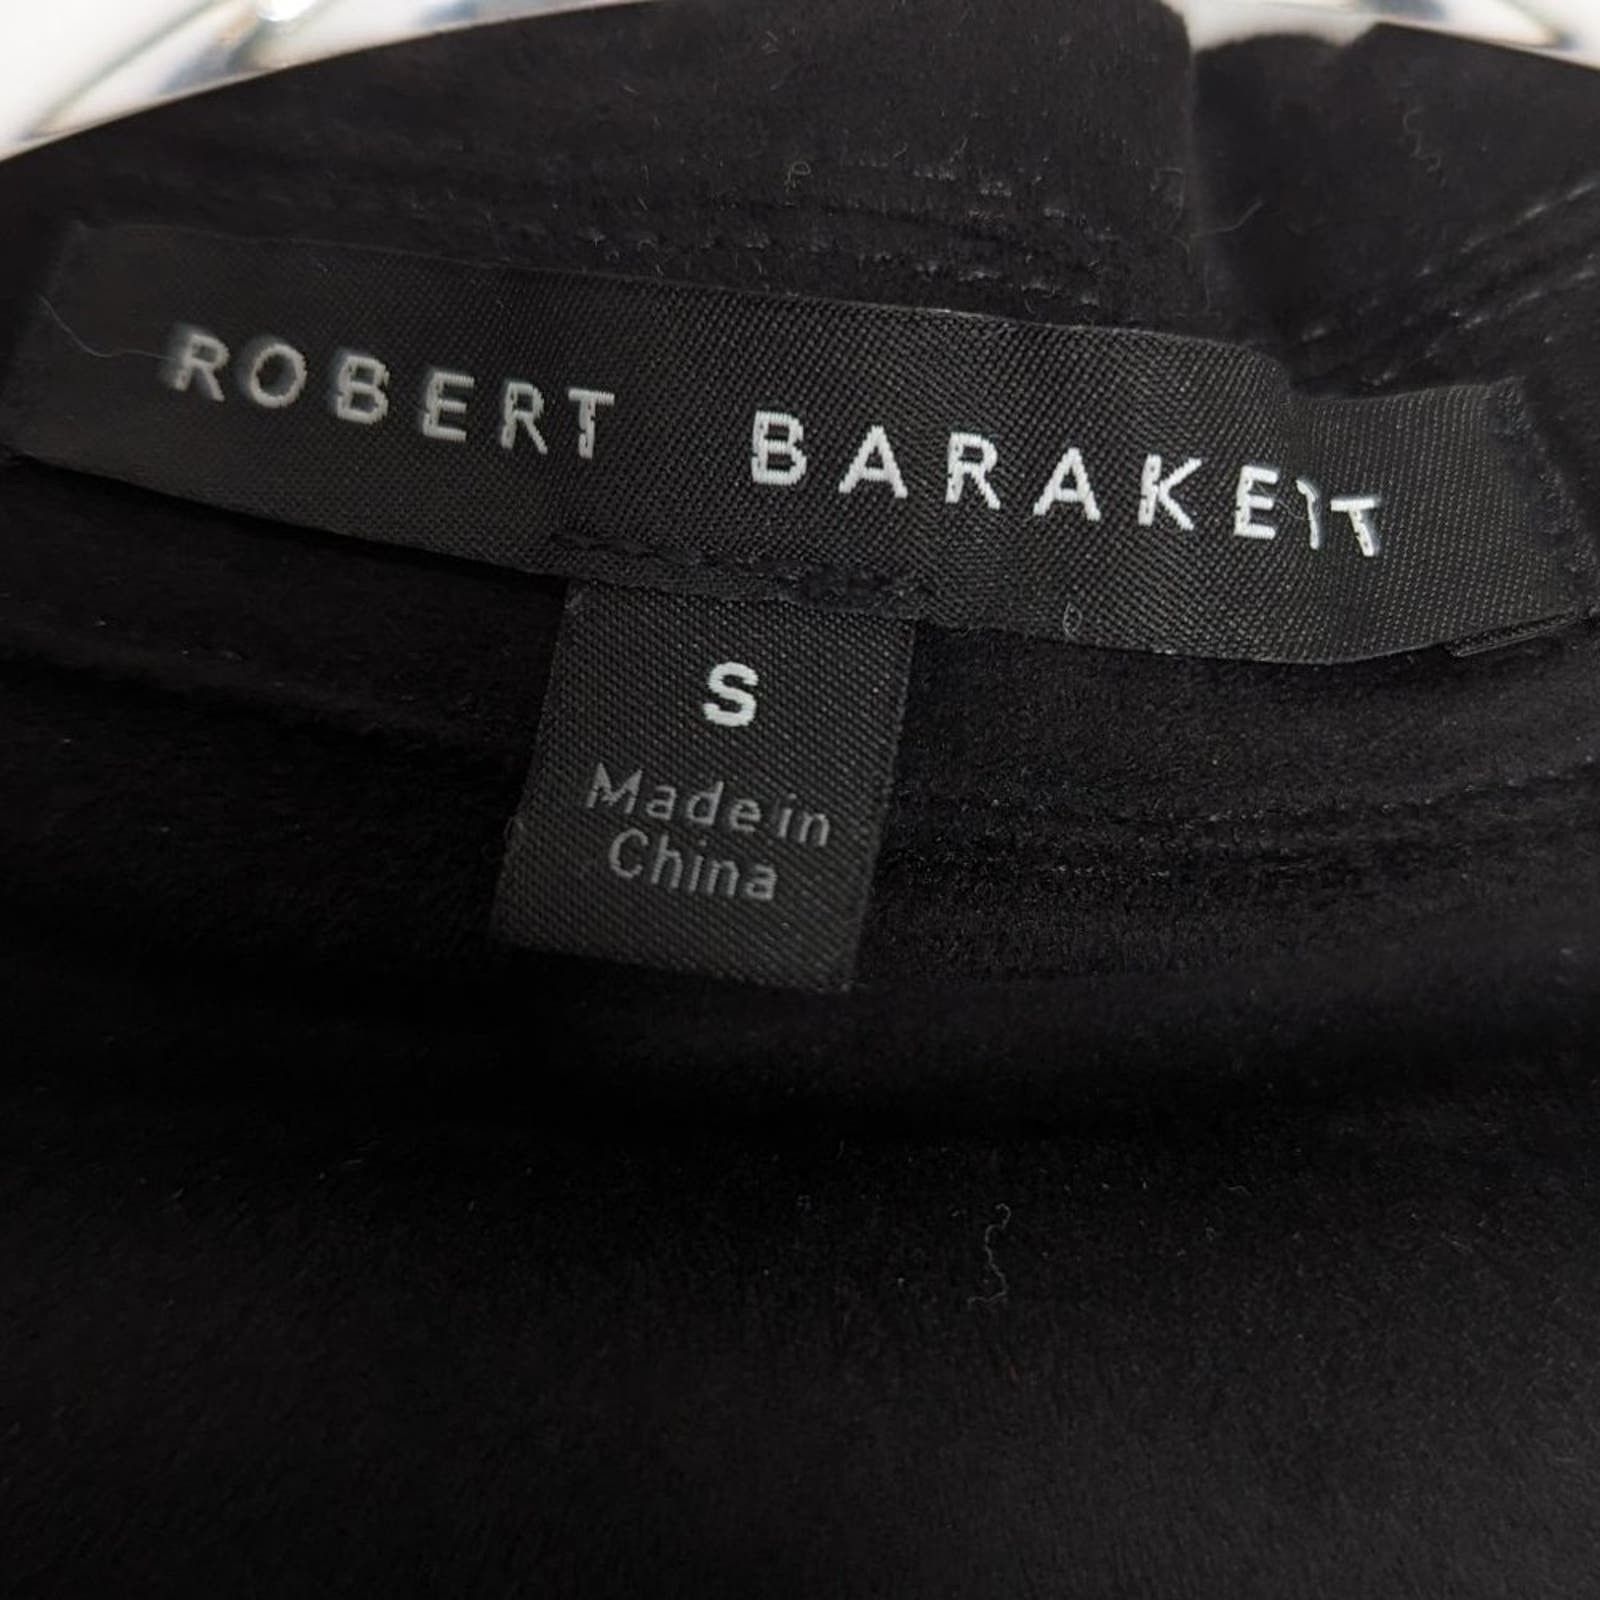 Robert Barakett Robert Barakett Black Renoir Denim Style Jacket Faux Suede S Size US S / EU 44-46 / 1 - 3 Thumbnail